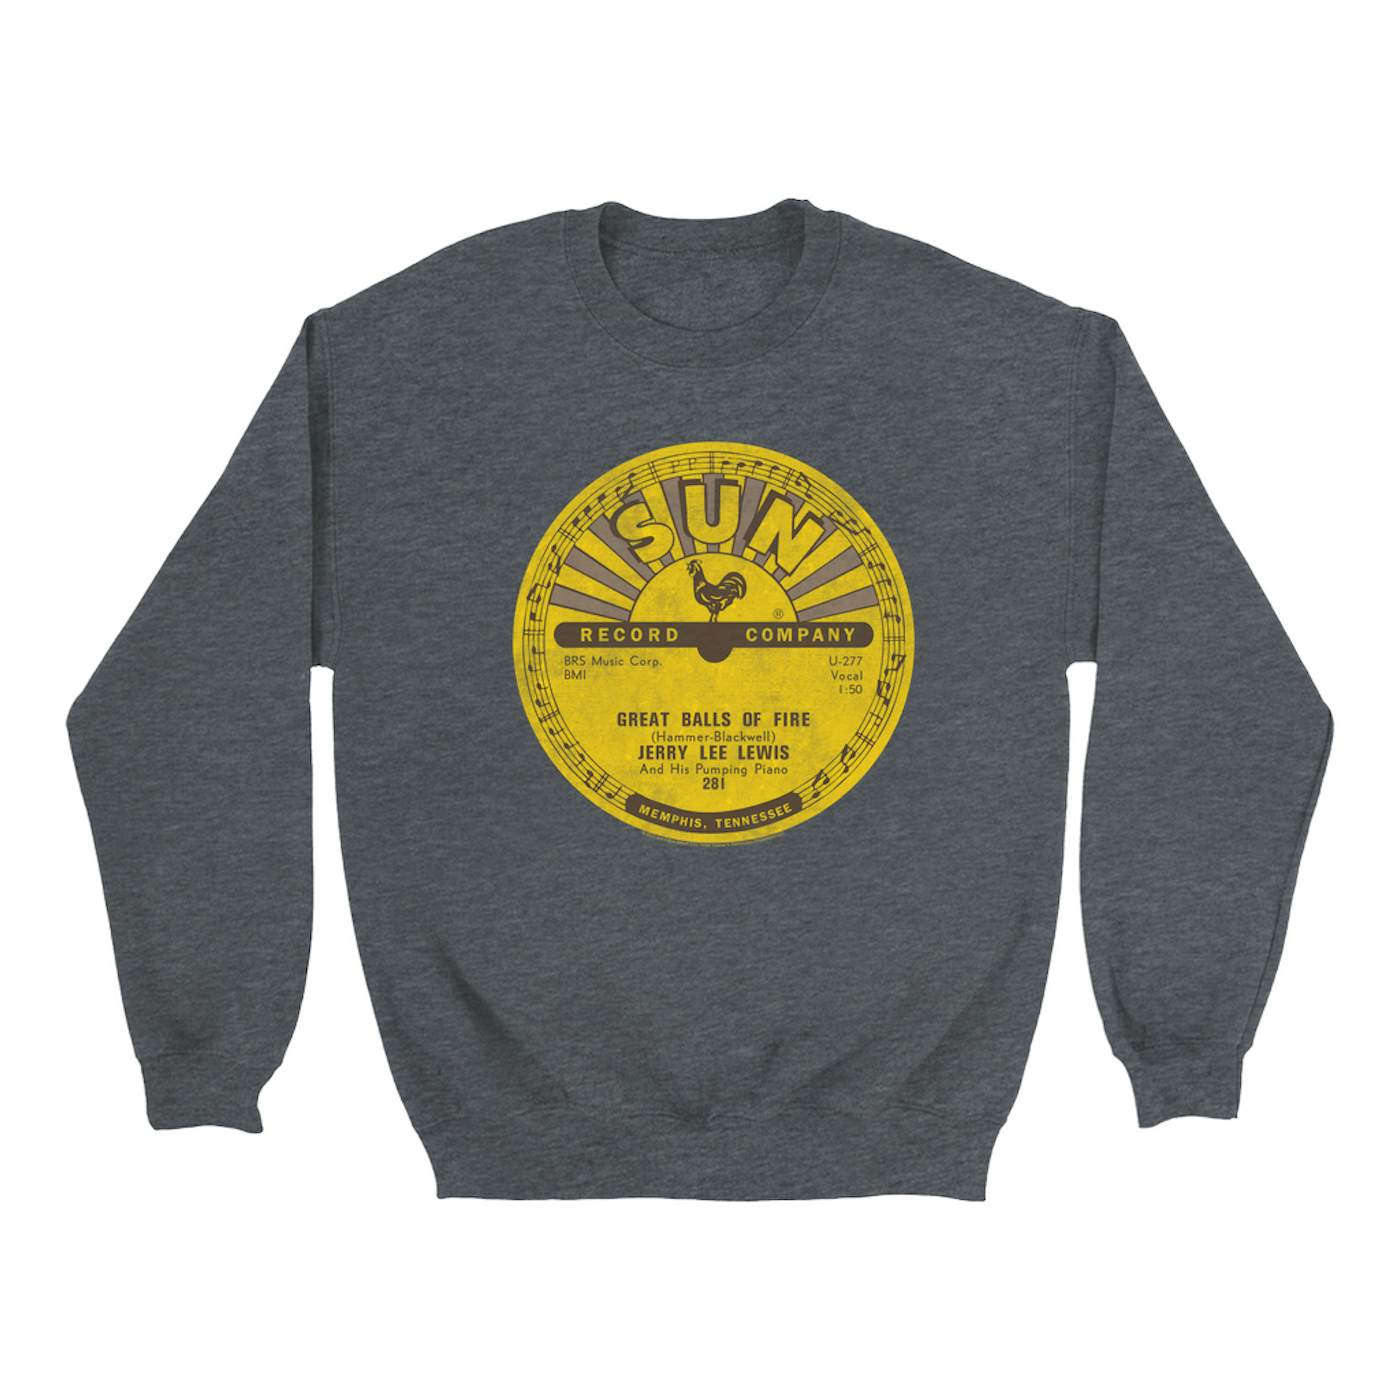 Jerry Lee Lewis Sweatshirt | Great Balls Of Fire Record Label Distressed Jerry Lee Lewis Sweatshirt